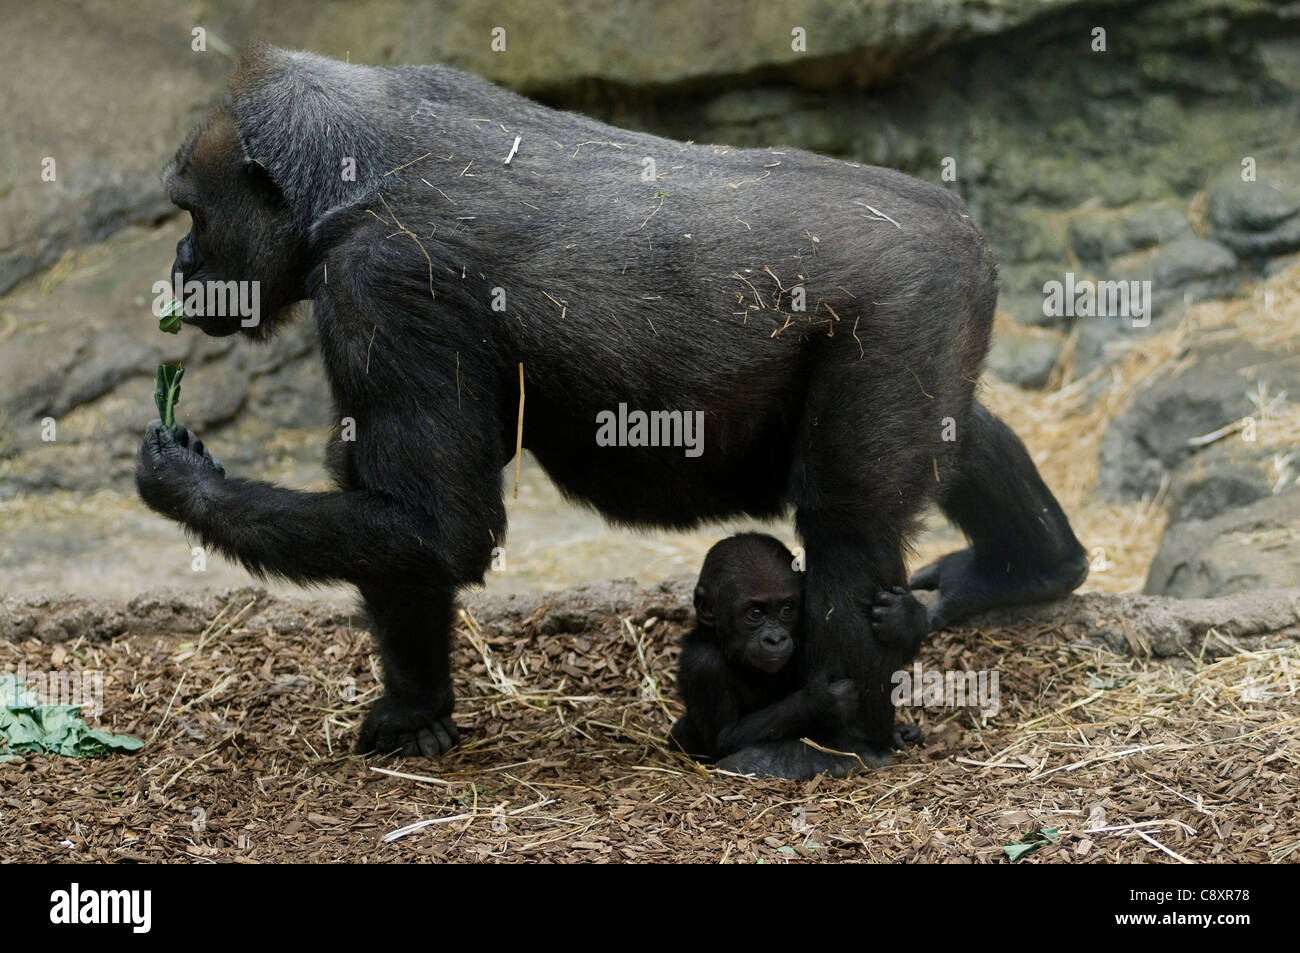 Un gorille marche avec son bébé, serrant sa jambe Banque D'Images